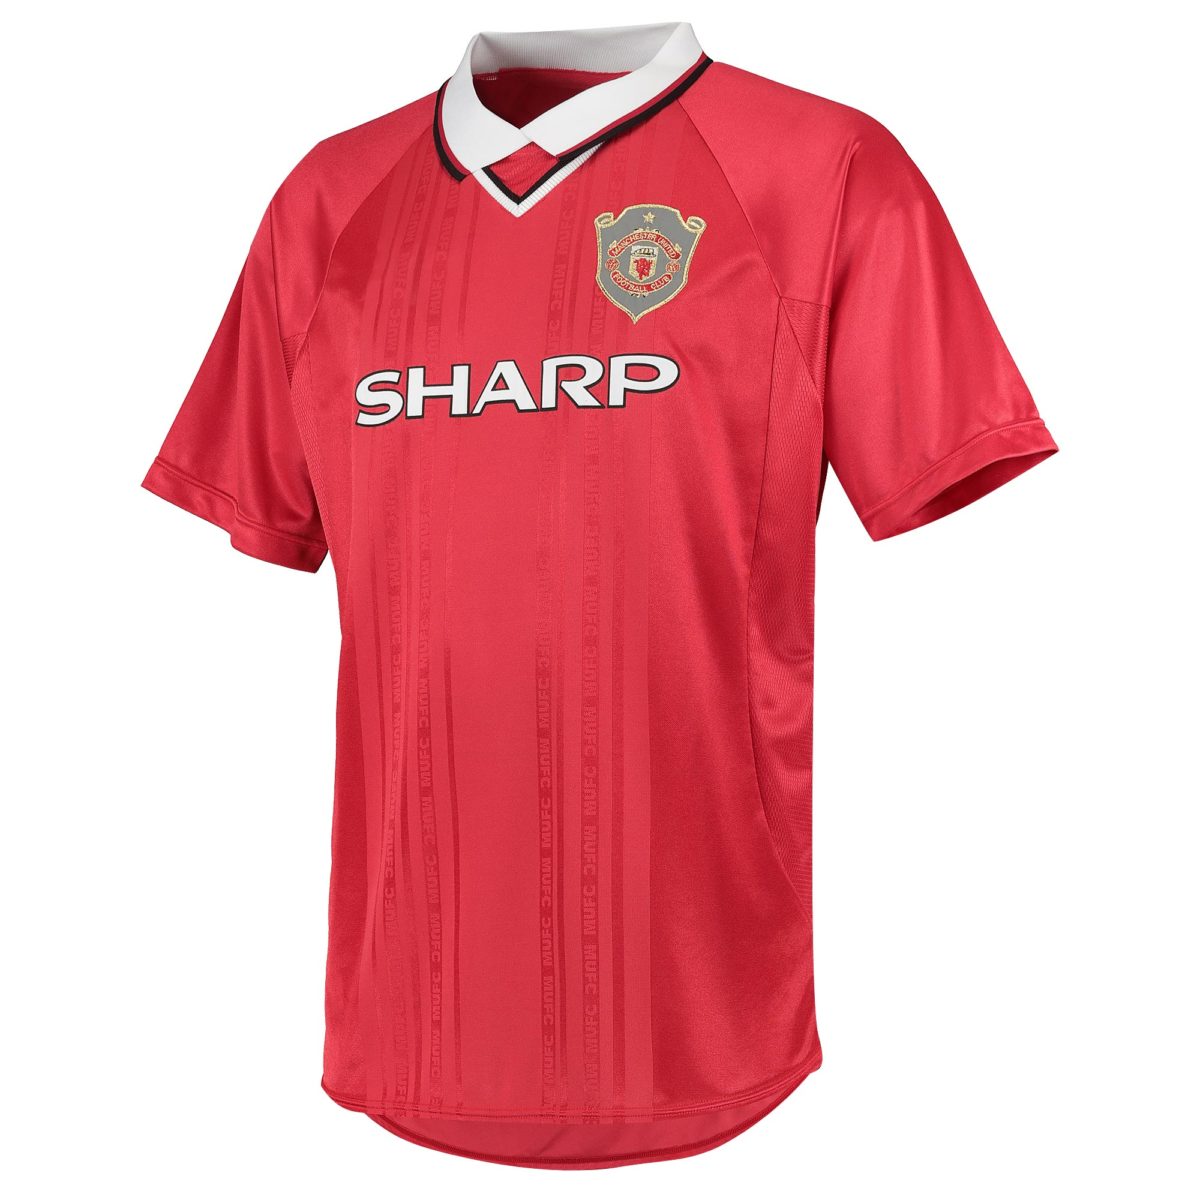 Meest iconische shirts in de voetbalgeschiedenis: Manchester United 1999